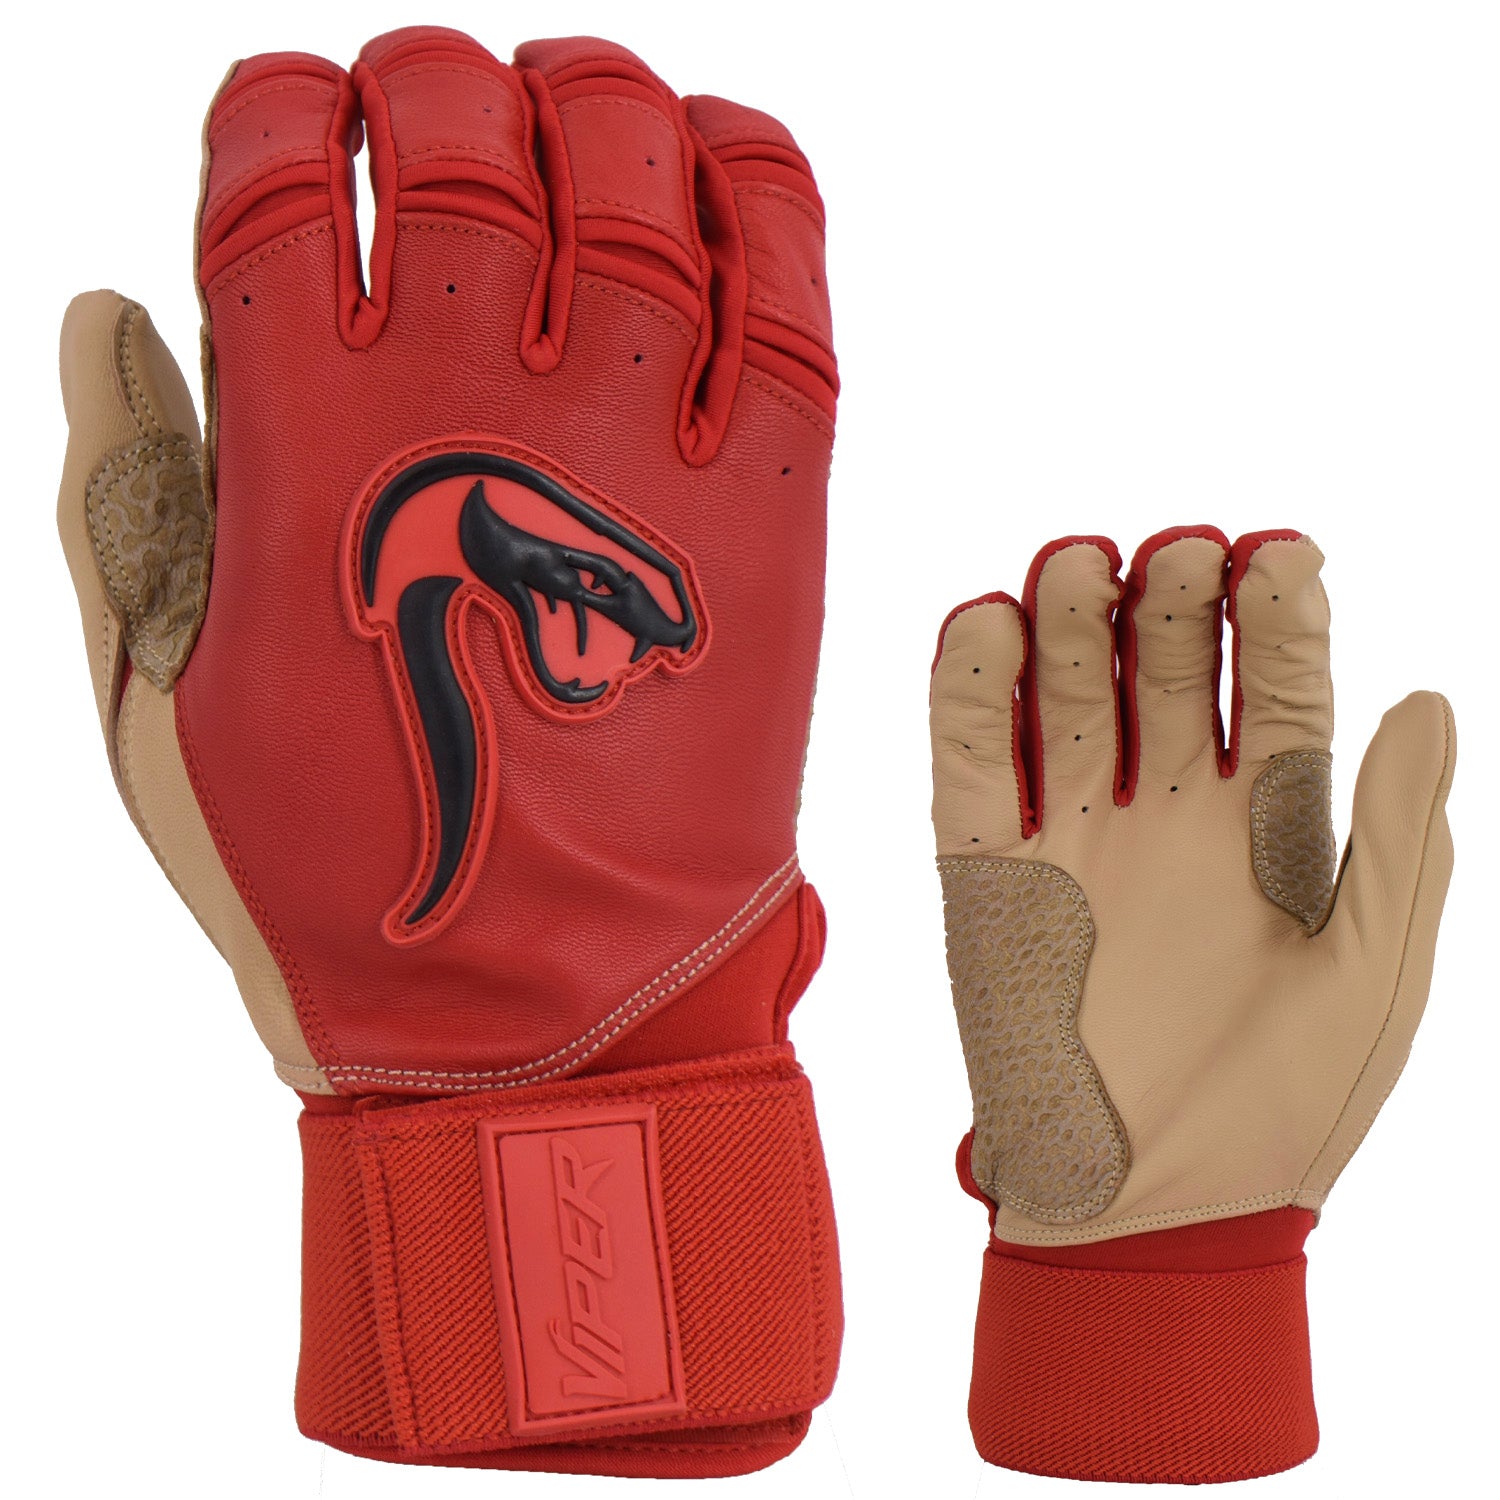 Viper Grindstone Long Cuff Batting Glove - Red/Tan